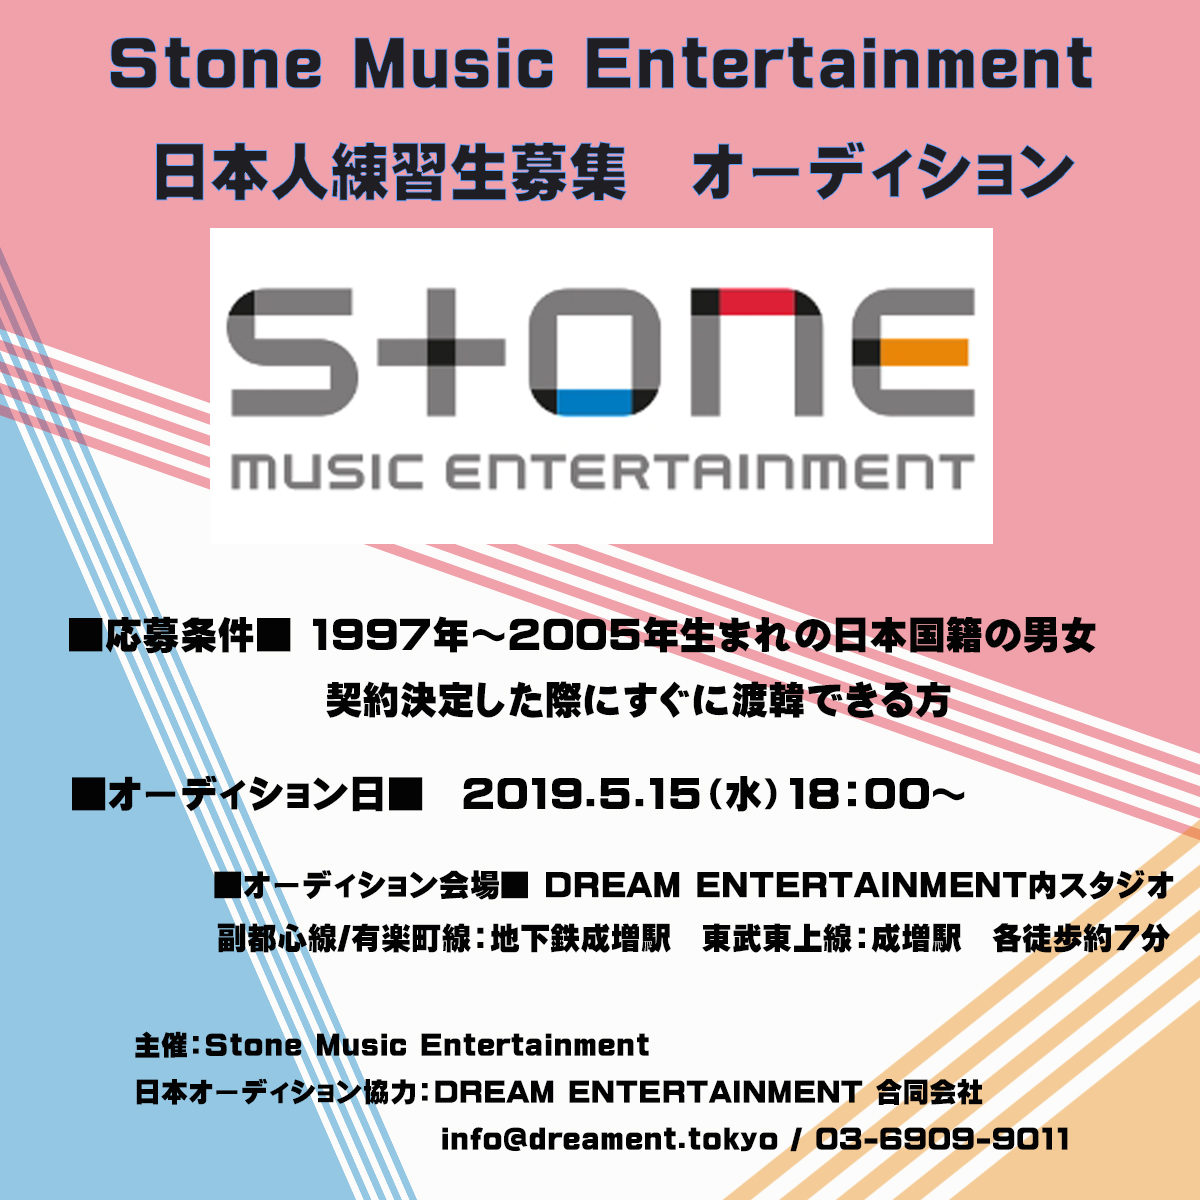 【オーディション】STONE MUSIC ENTERTAINMENT 日本人募集オーディション